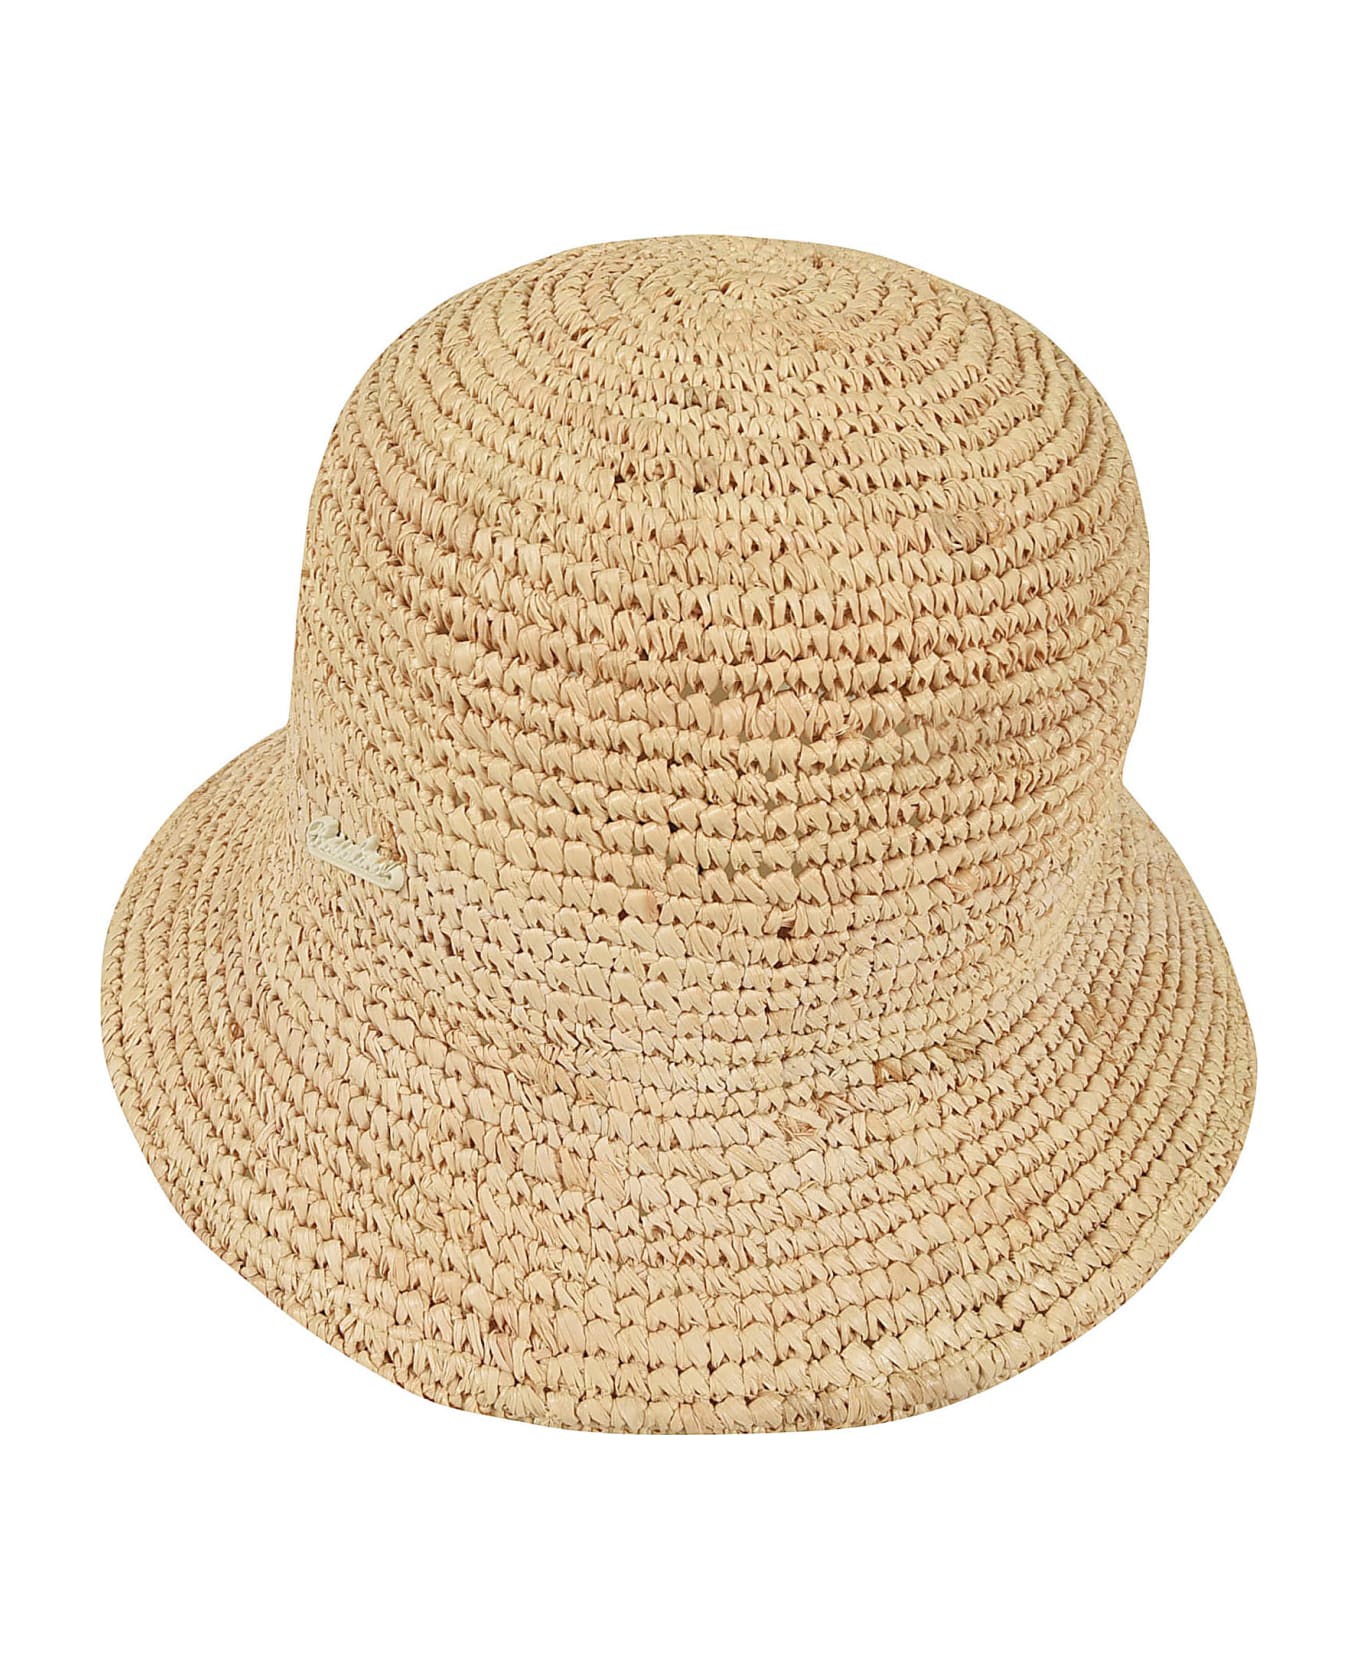 Borsalino Rafia Crochet Bucket Hat - Beige 帽子